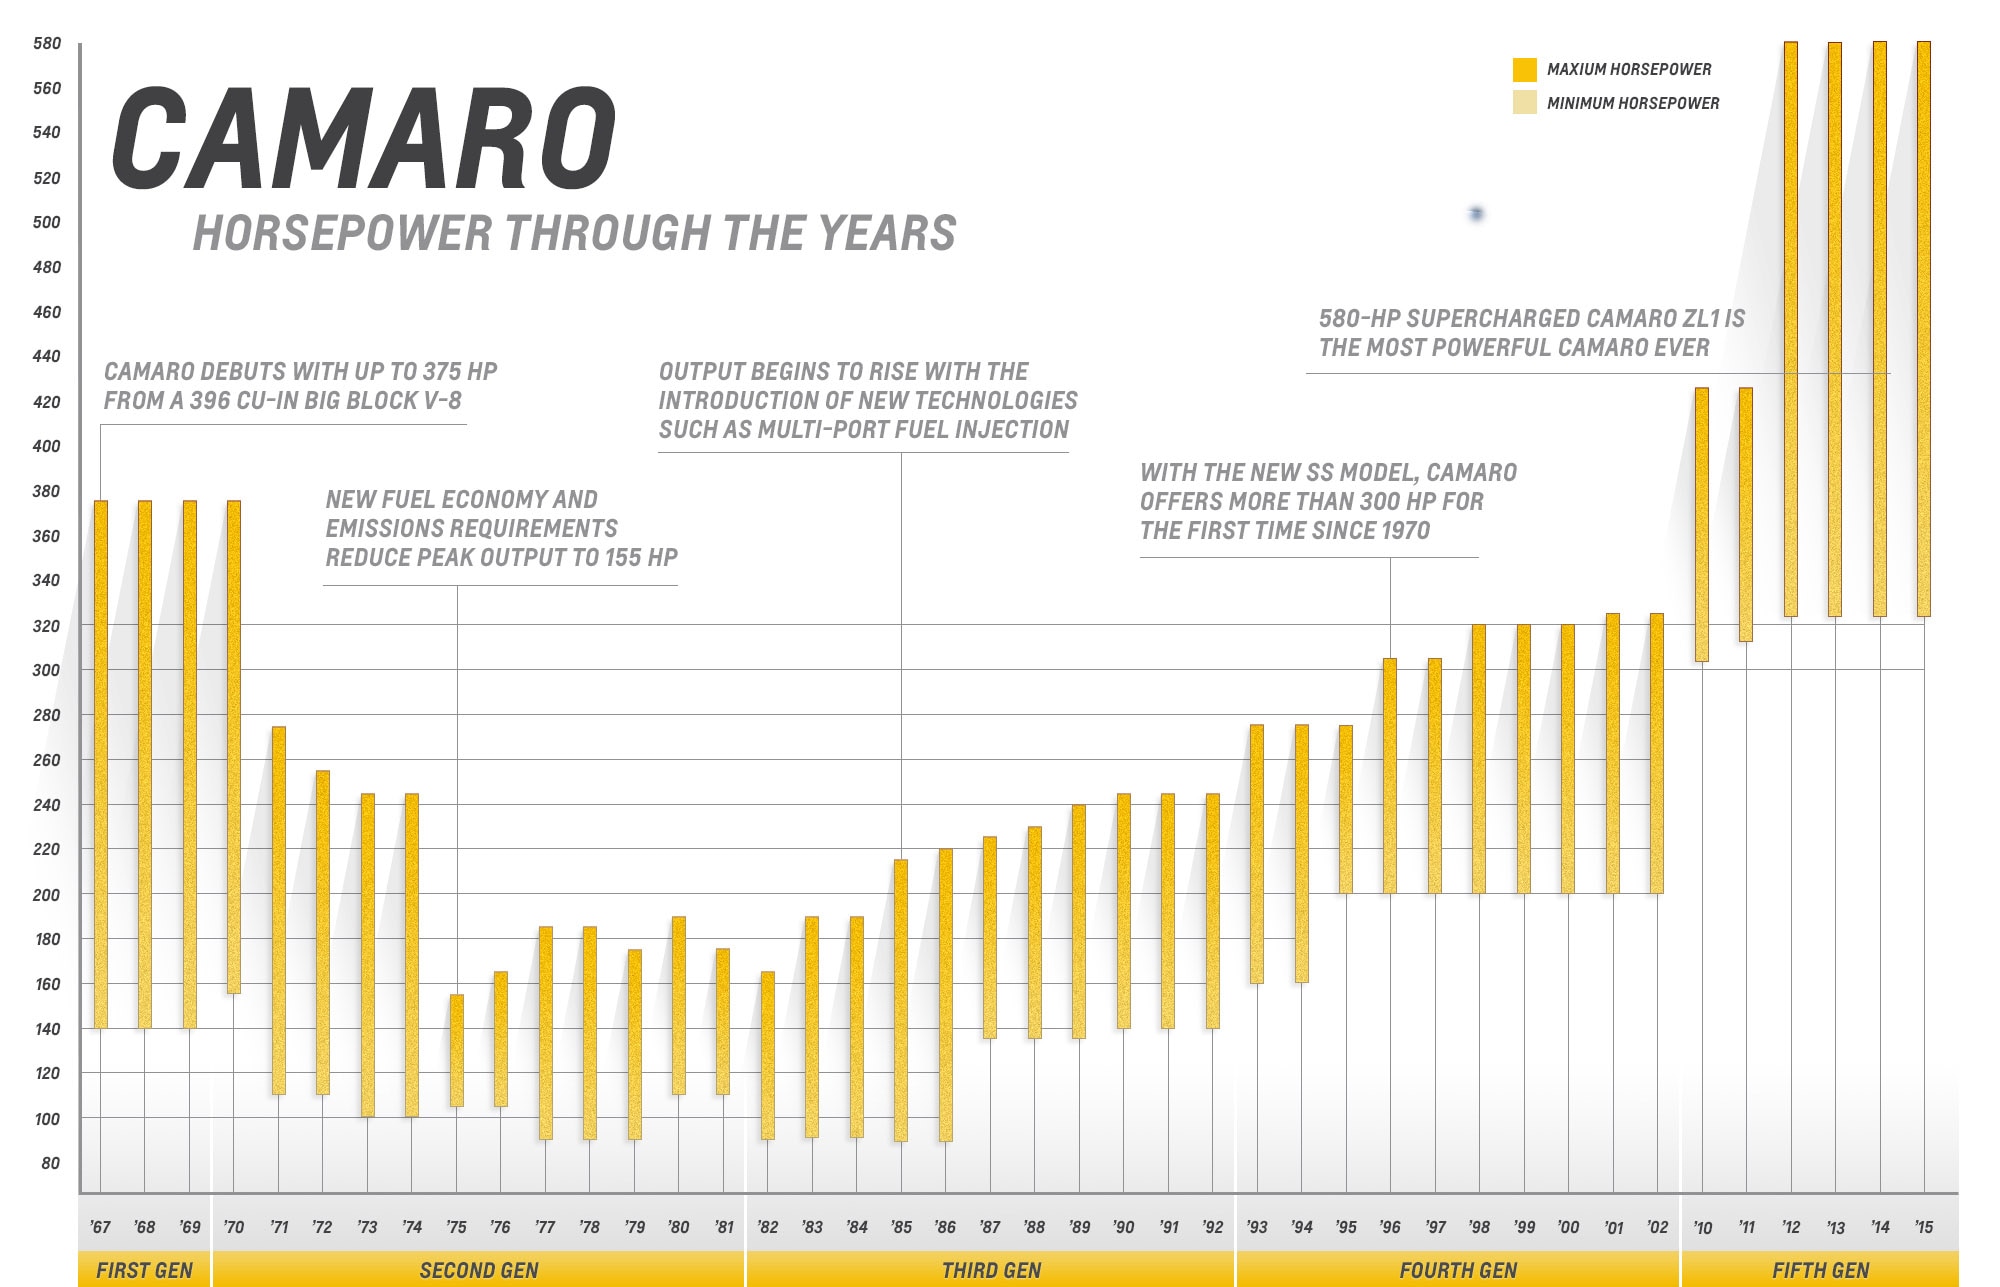 Chart of Camaro horsepower through the years